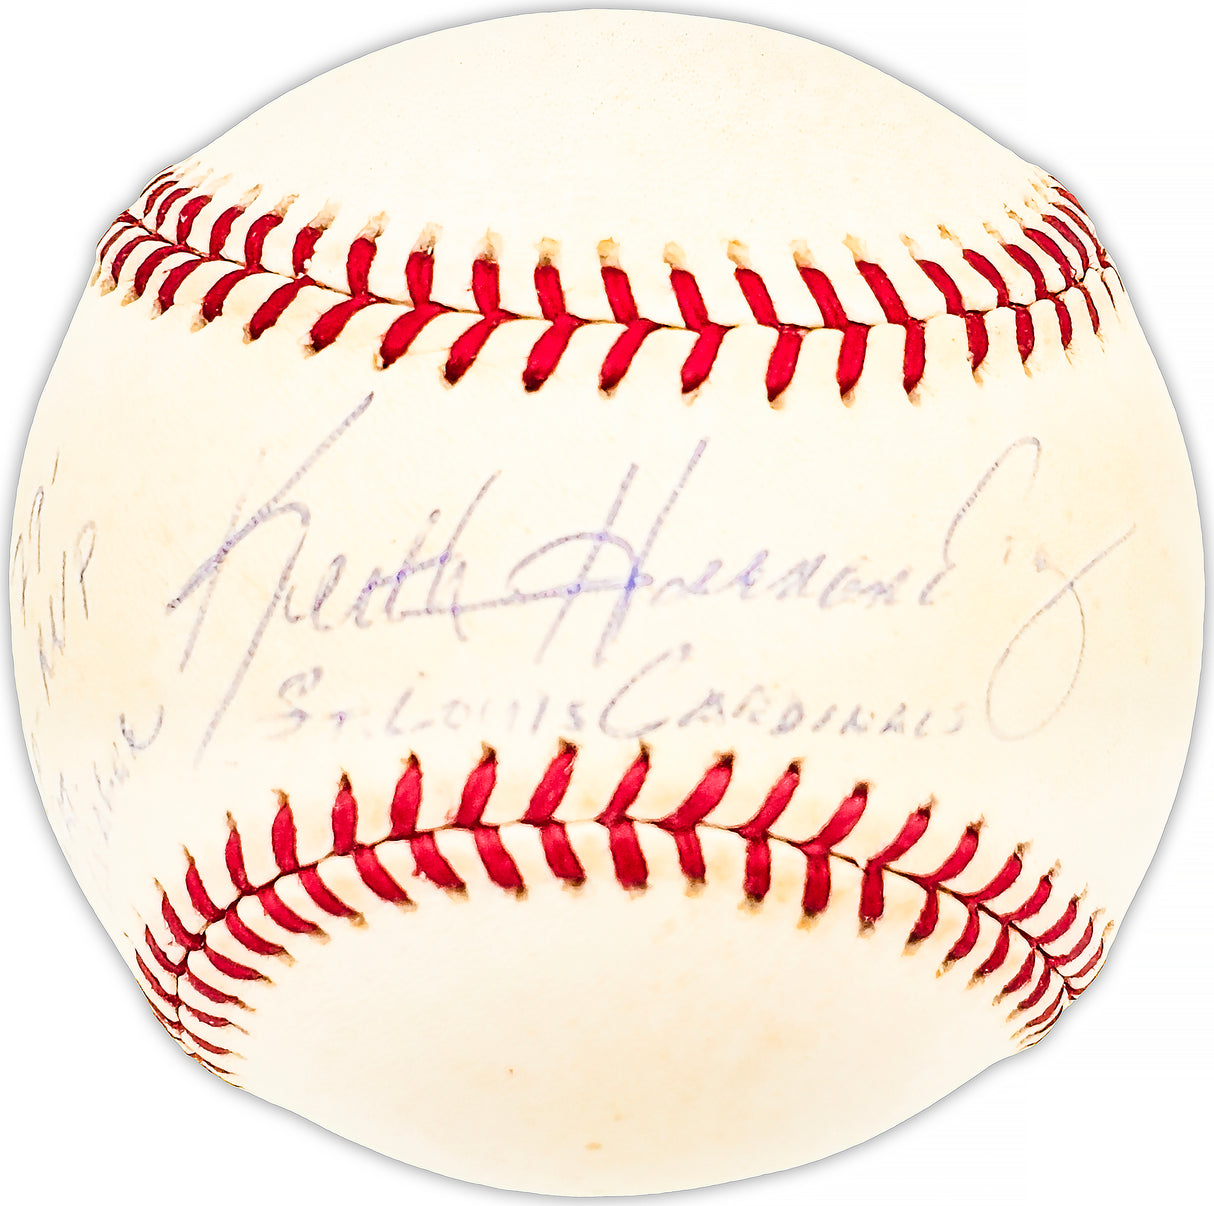 Keith Hernandez Autographed Official NL Baseball St. Louis Cardinals "79 Co-MVP NL" Beckett BAS QR #BM25665